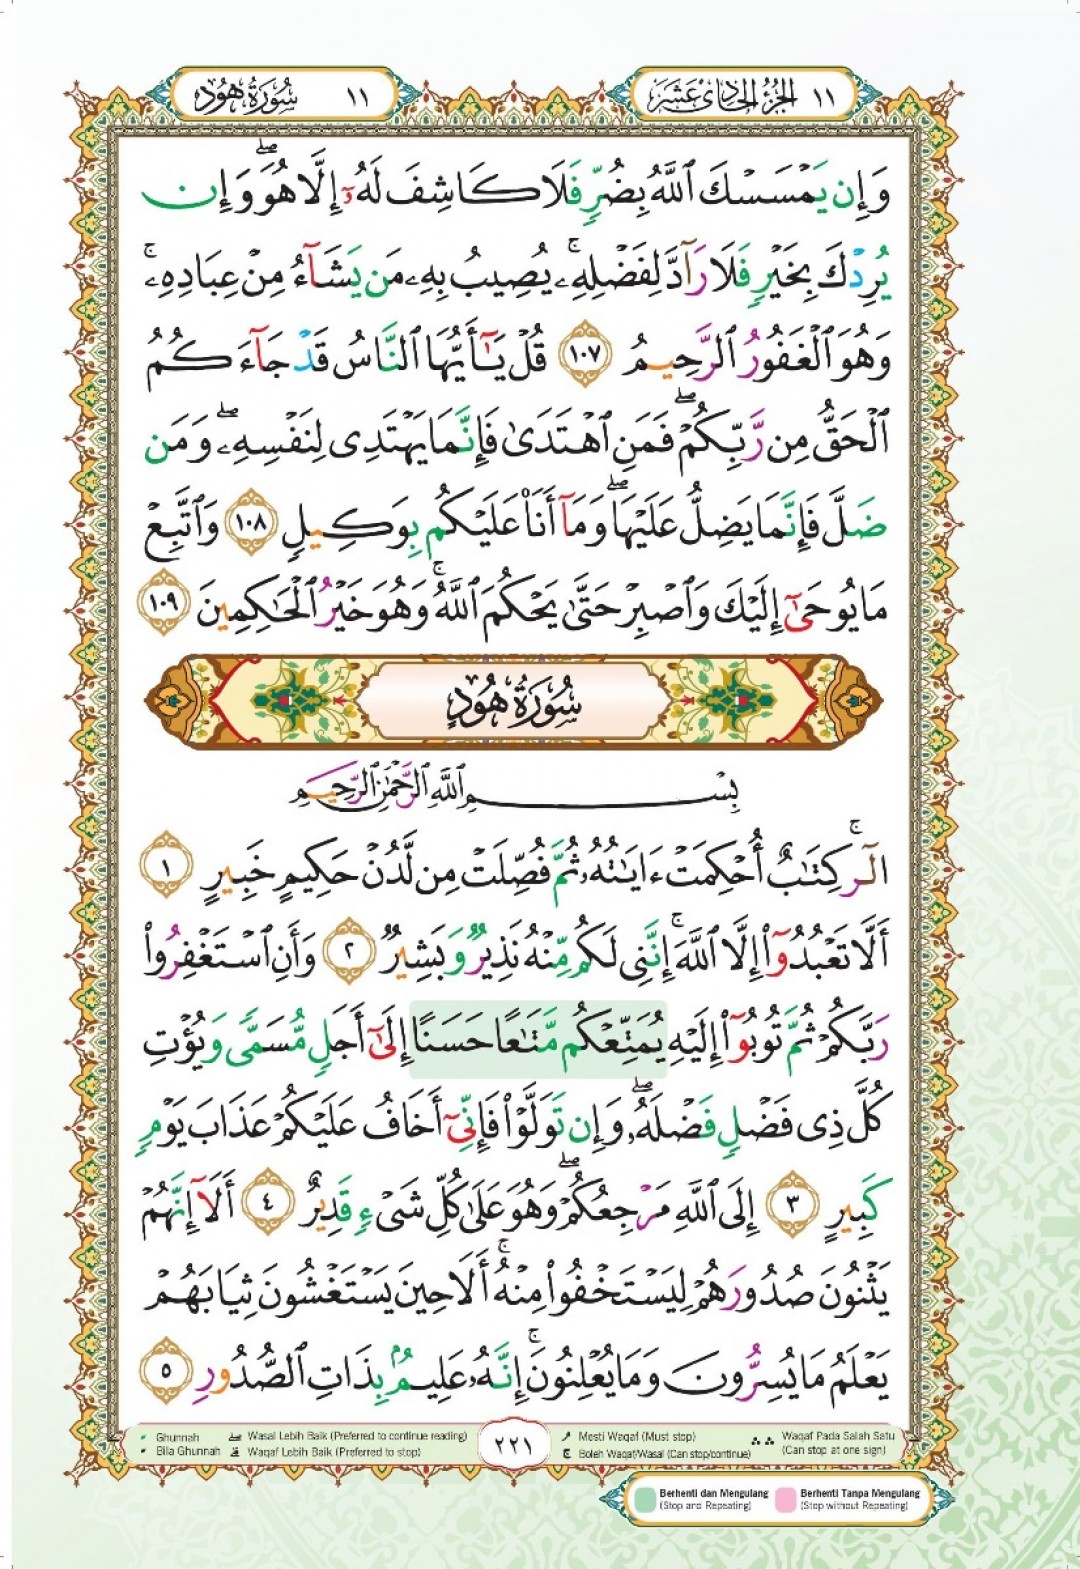 Al-Quran Al-Karim Mushaf Waqaf & Ibtida A4